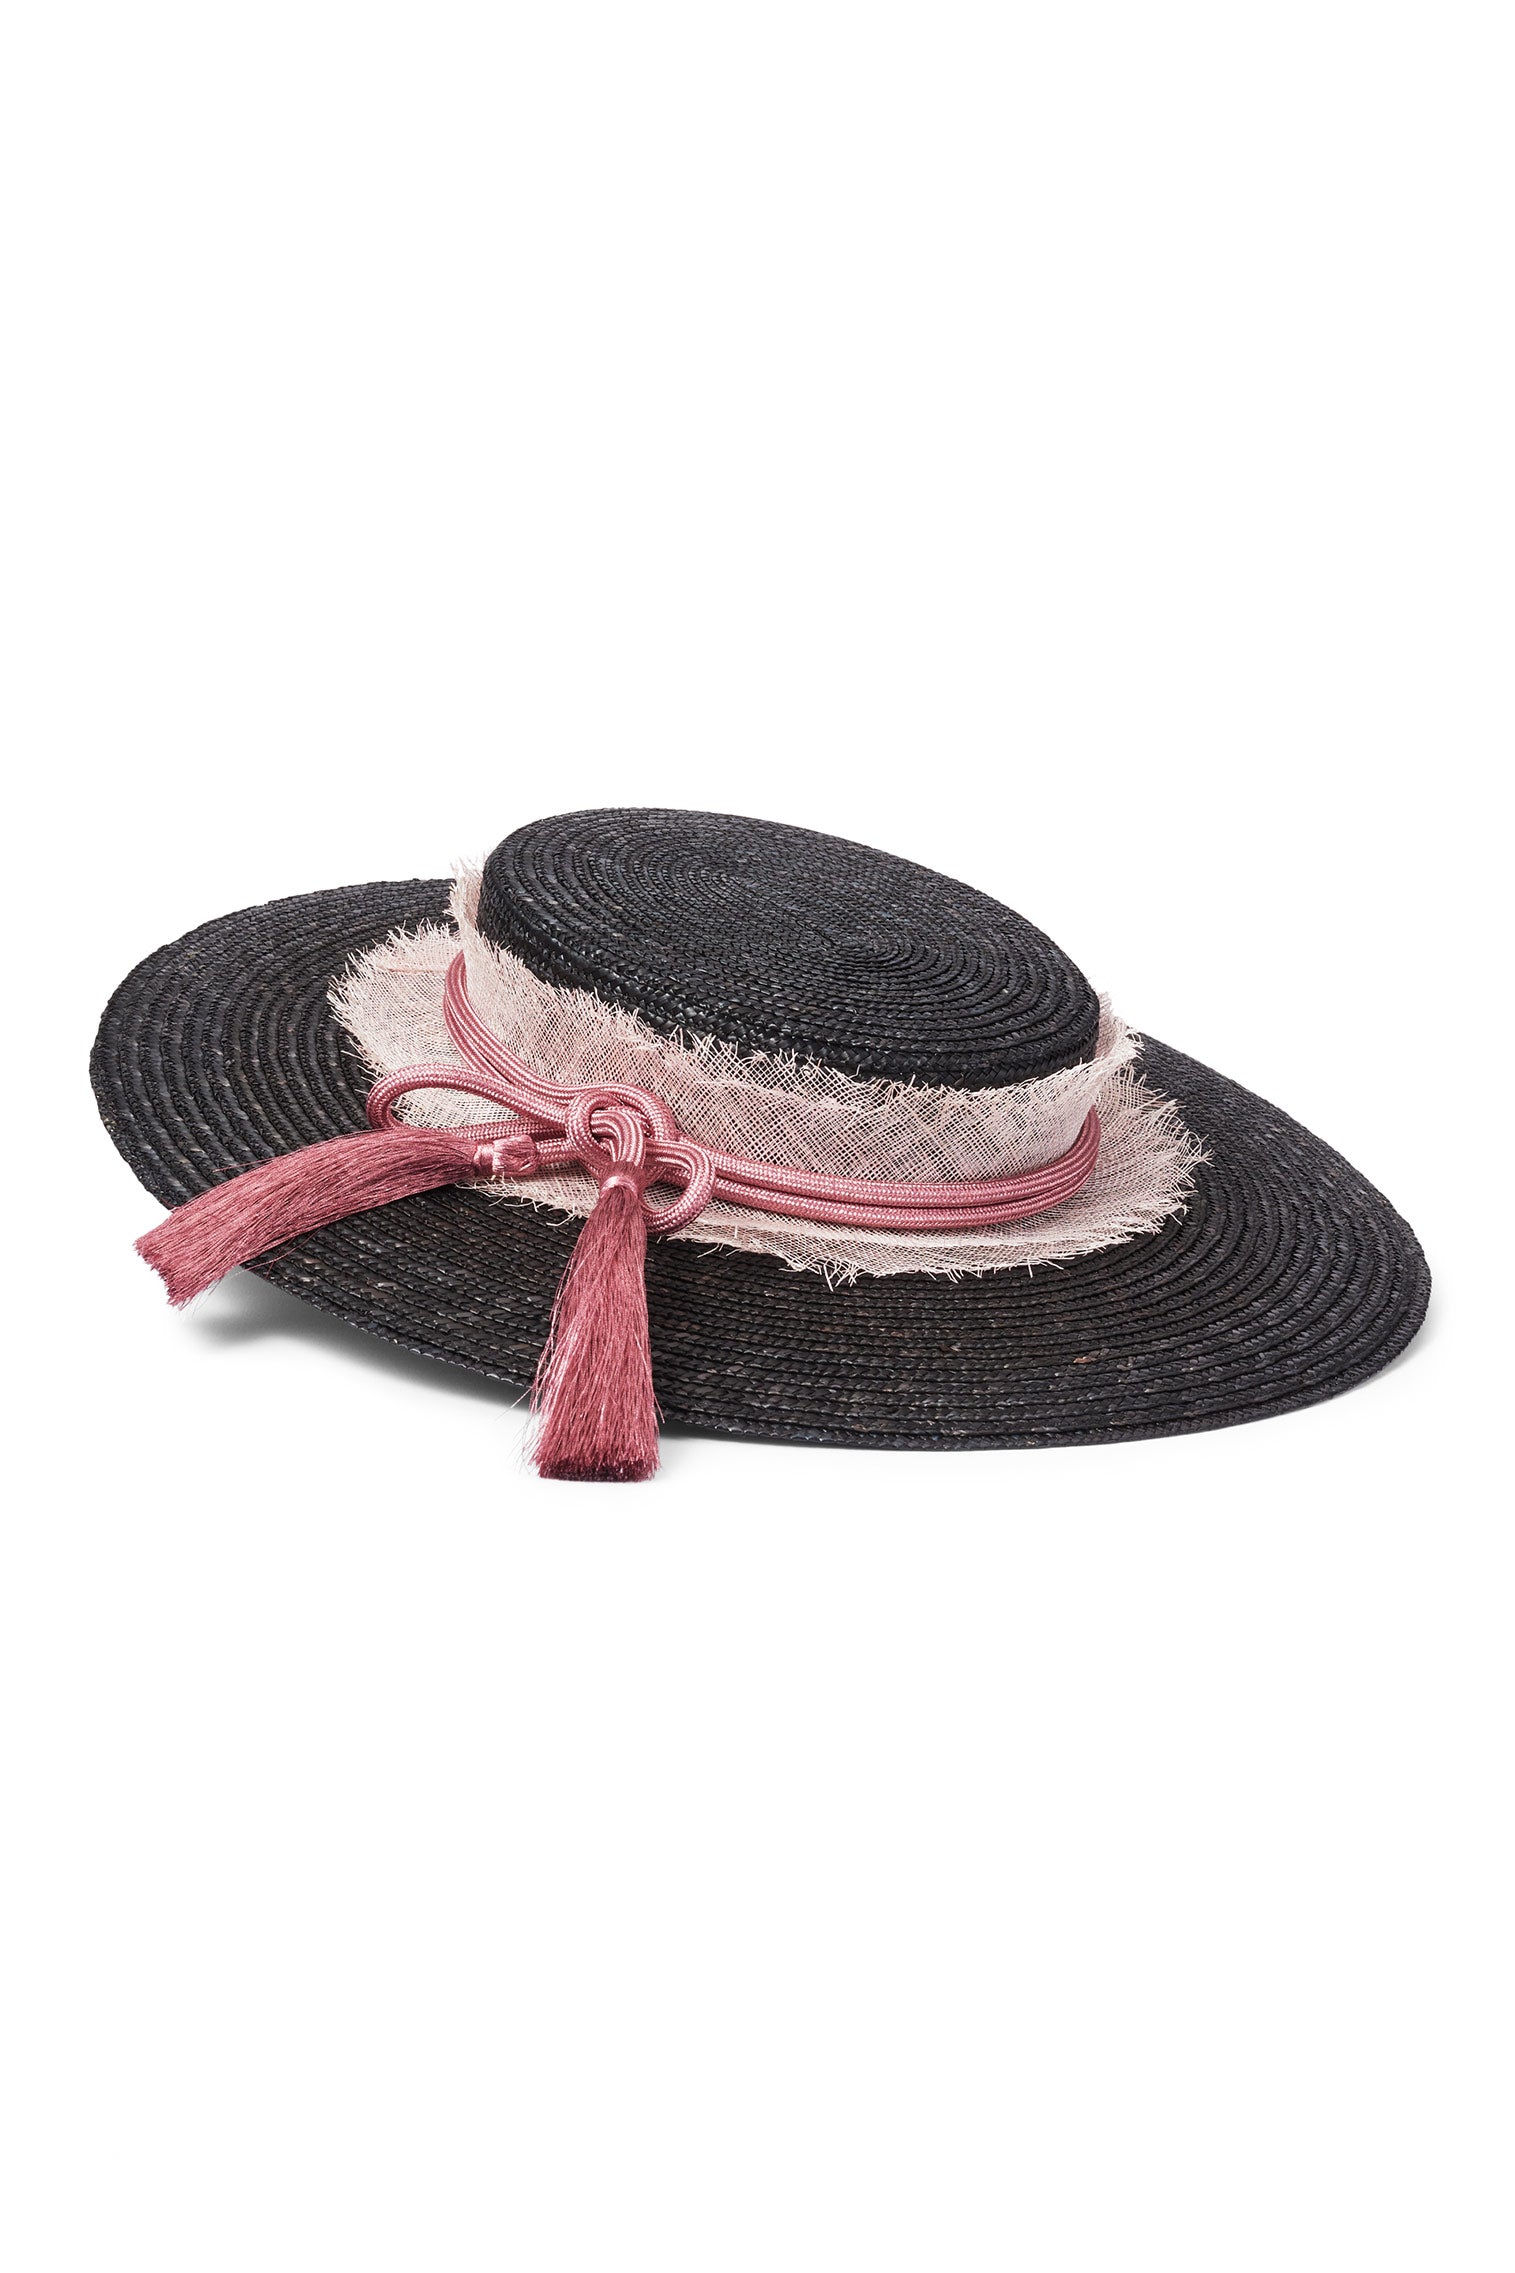 Nevada Boater - New Season Women's Hats - Lock & Co. Hatters London UK